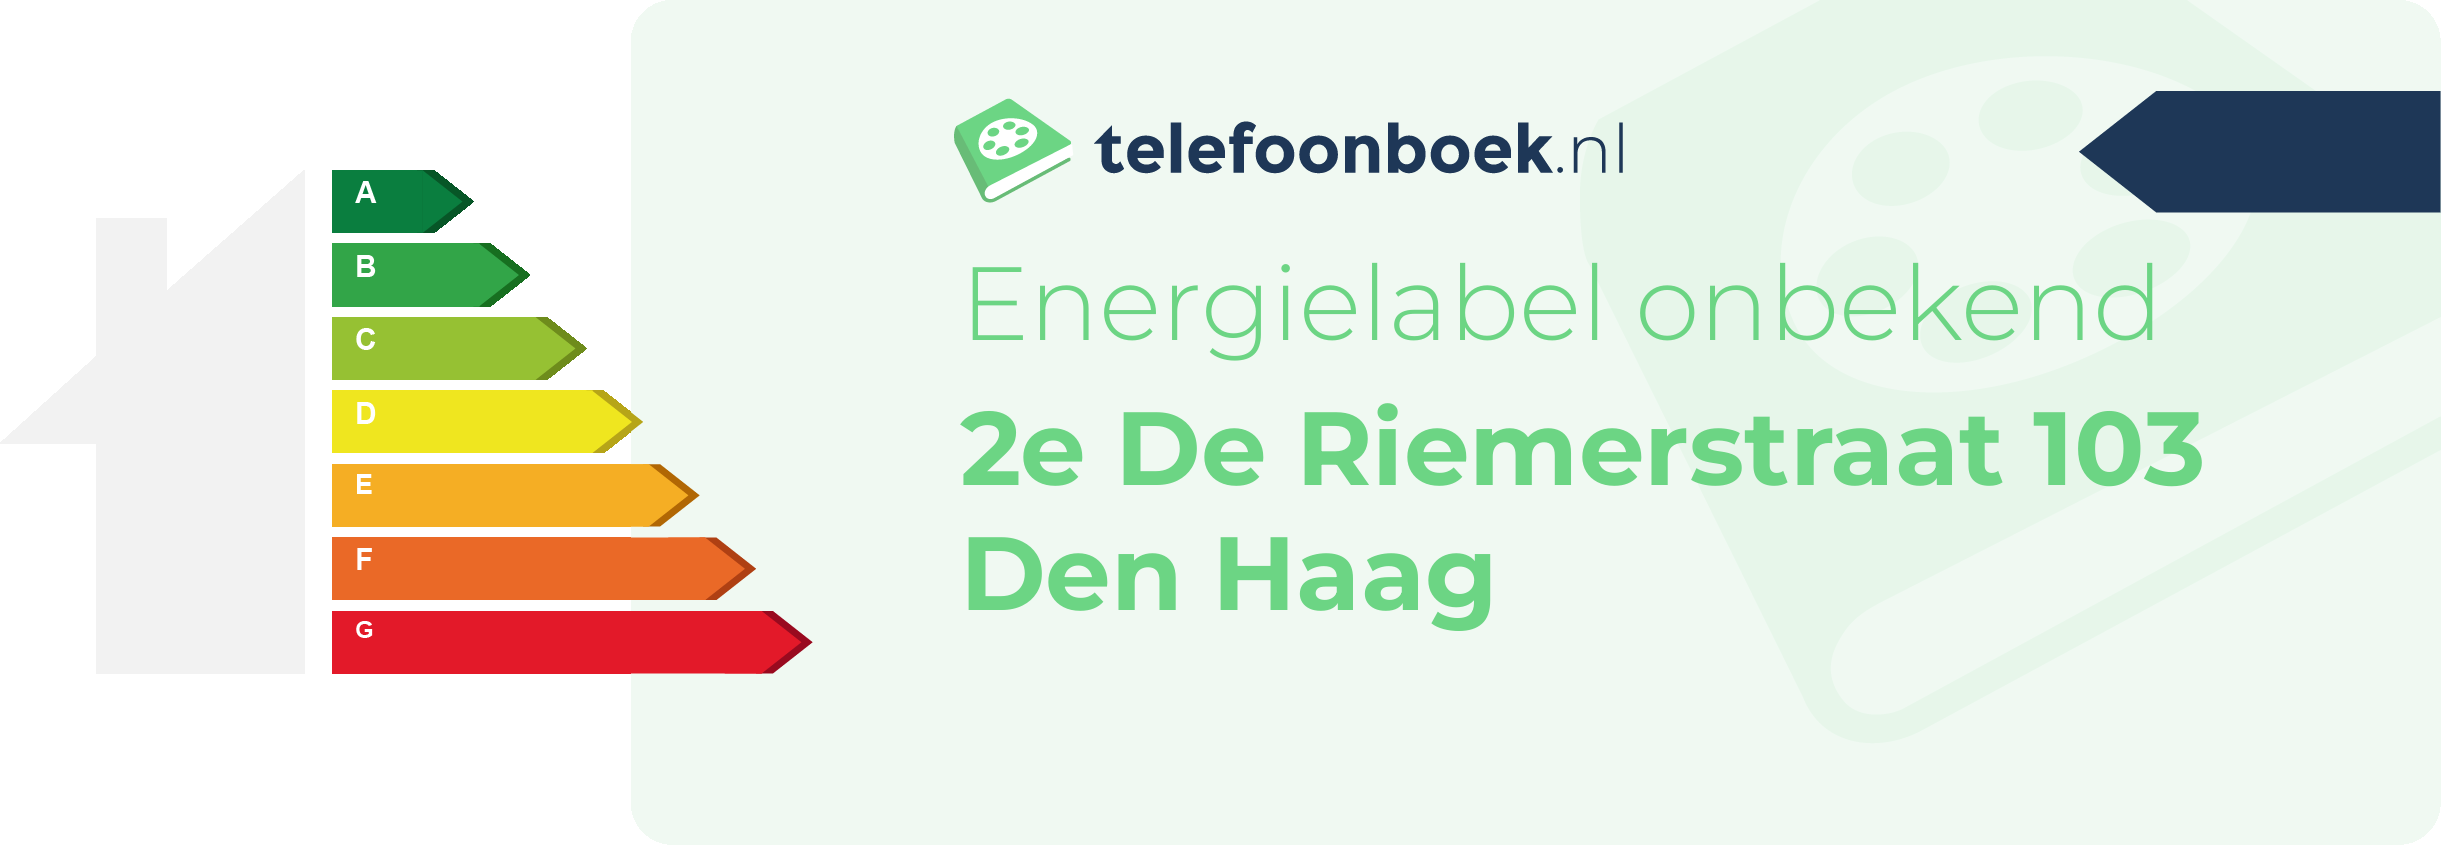 Energielabel 2e De Riemerstraat 103 Den Haag